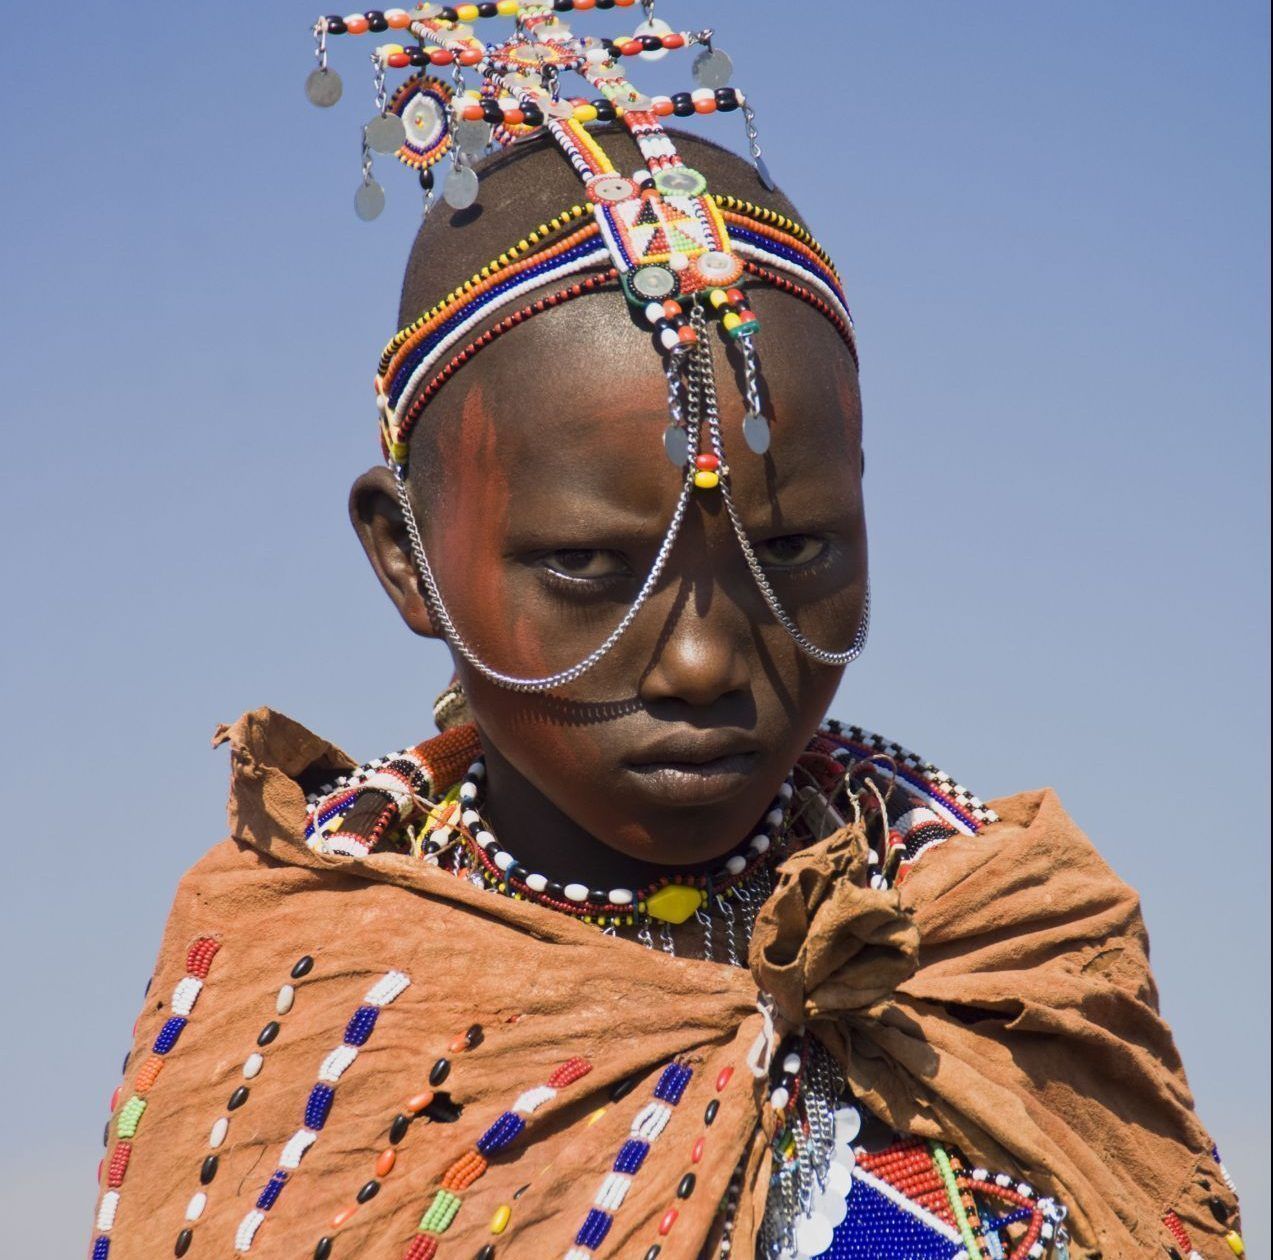 In den weiten Ebenen im Süden Kenias und im Norden Tansanias pflegen die Massai seit Jahrhunderten ihre Hochzeitsrituale. Der Vater der Braut spuckt seinen Segen - mit Milch - auf deren (vorher kahlgeschorenen) Kopf und Brust und spricht dabei die Worte "Möge Gott dir viele Kinder schenken". Danach macht sie sich auf zu ihrem künftigen Ehemann, der von ihren Eltern ausgewählt wurde und meist deutlich älter ist als sie. Umscha